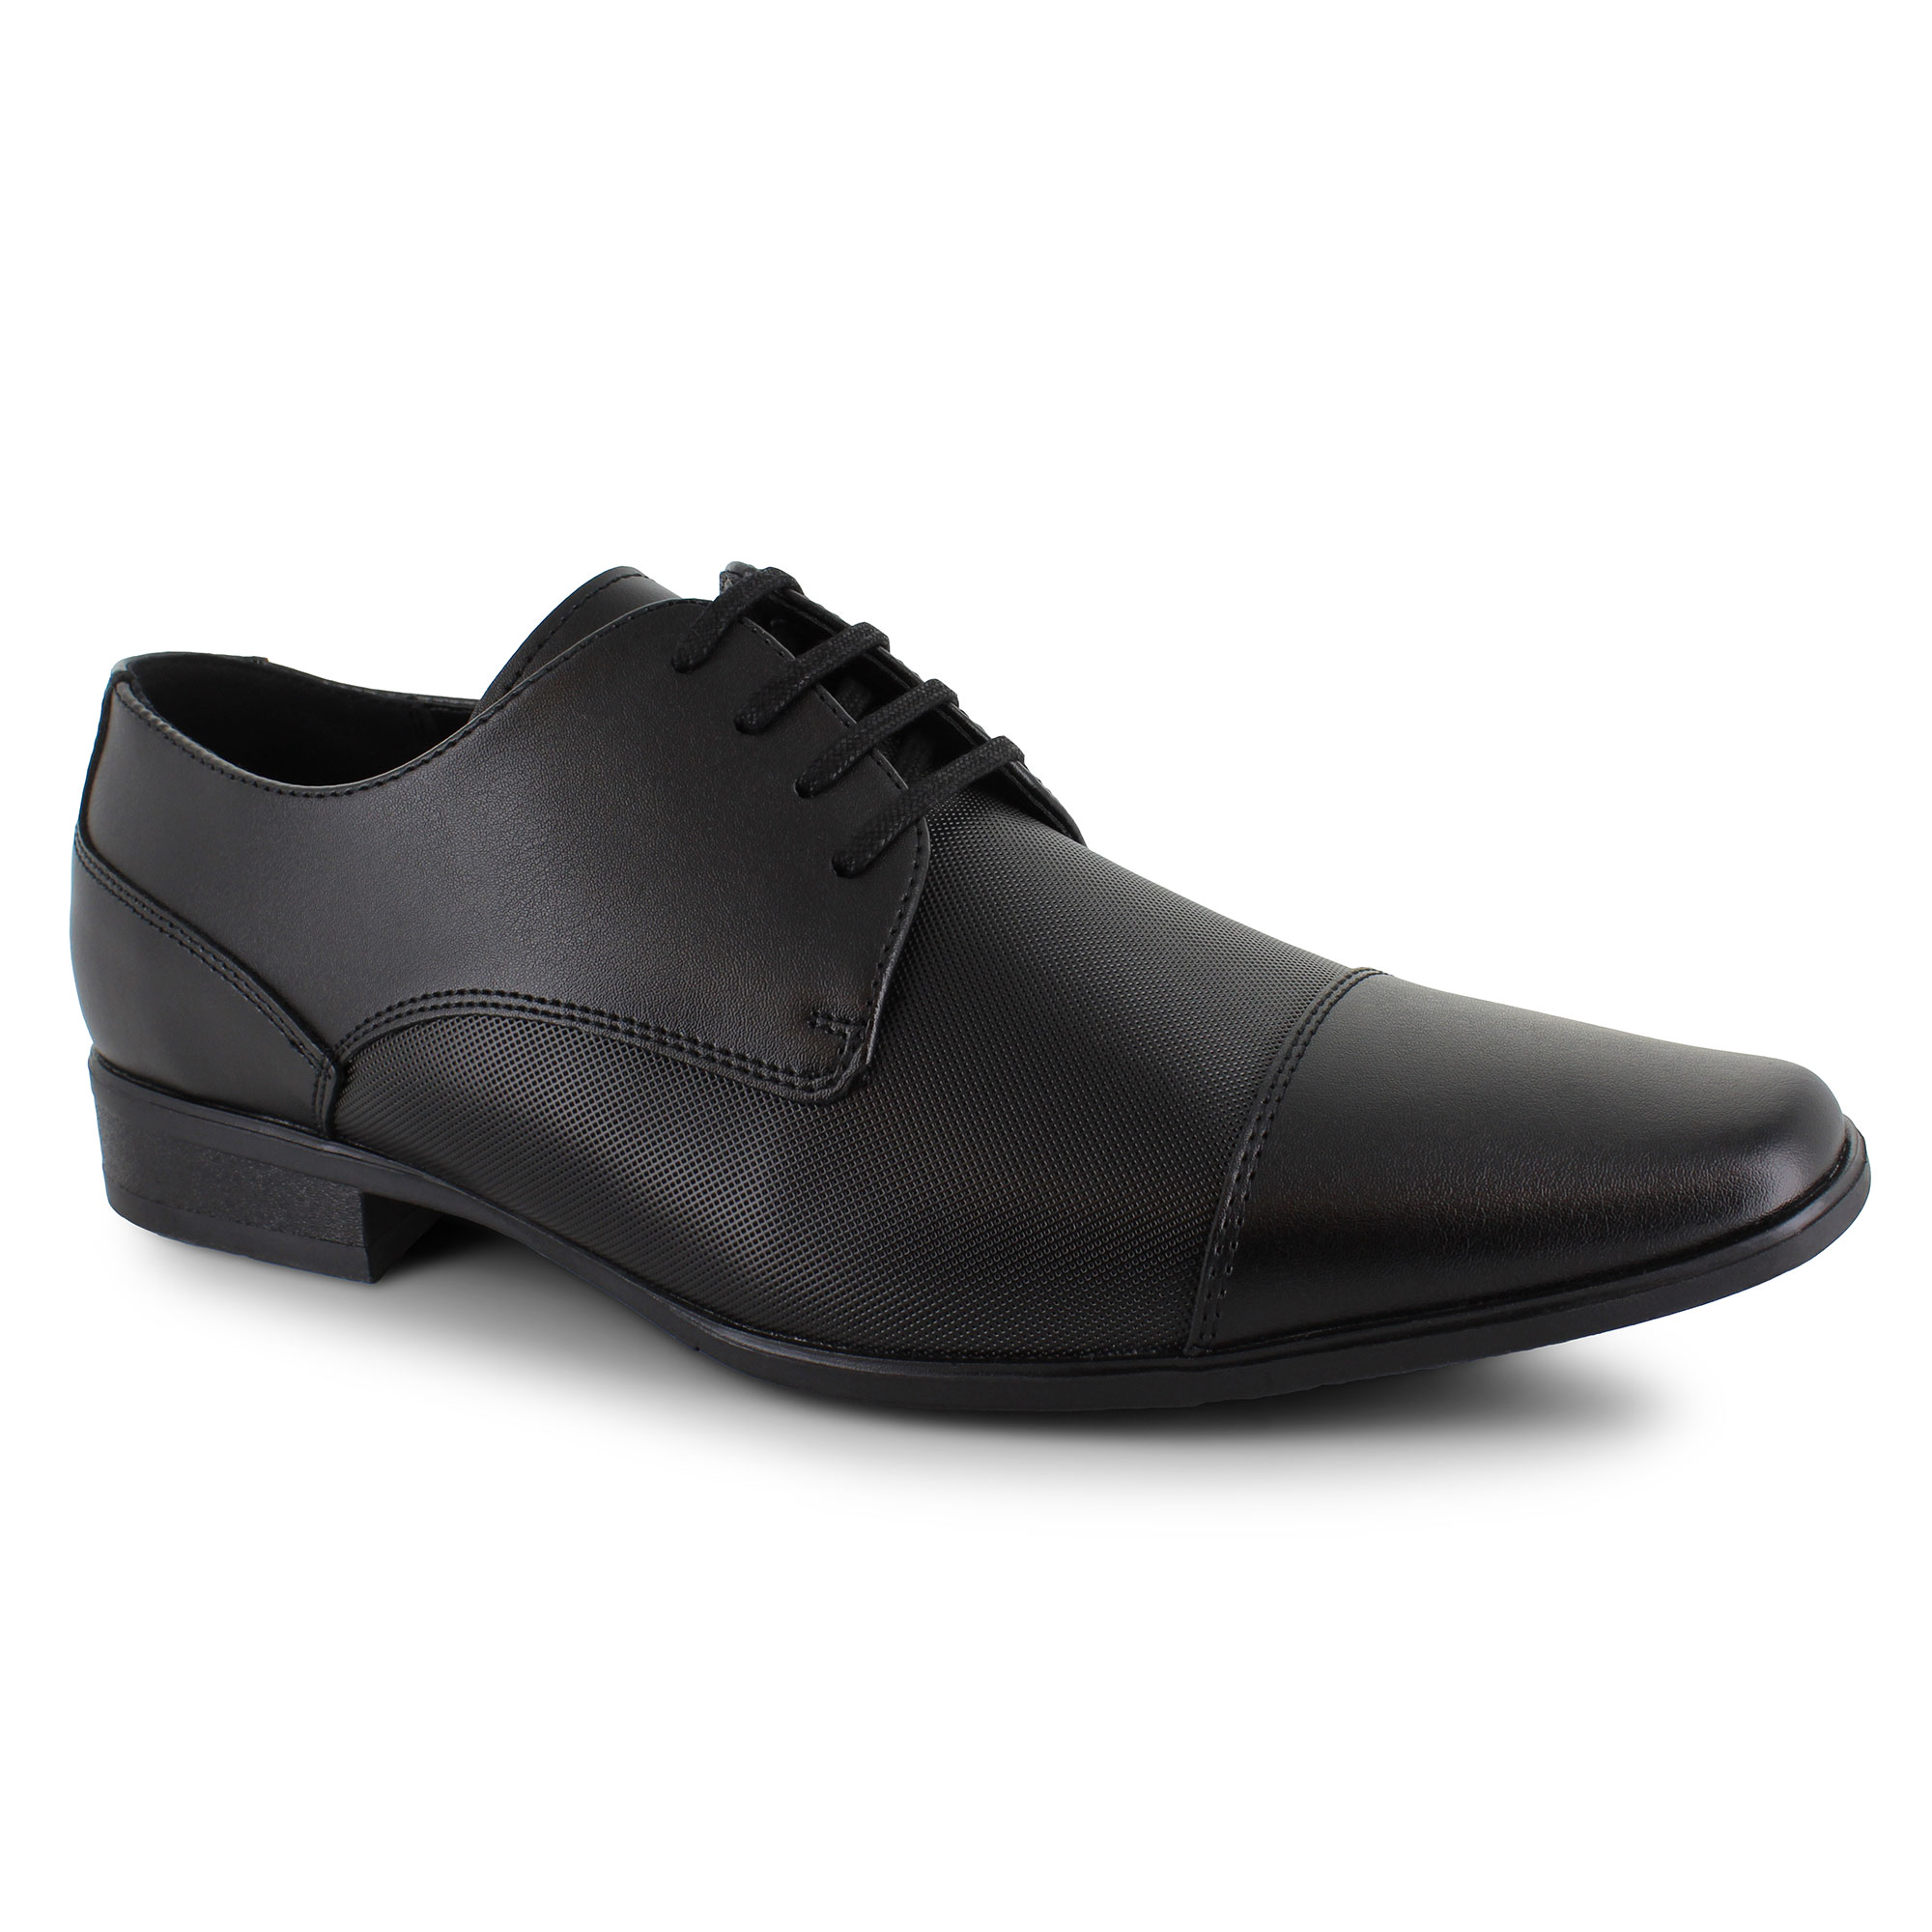 Men's Cap-Toe Shoes | Shop Now at SHOE DEPT. ENCORE